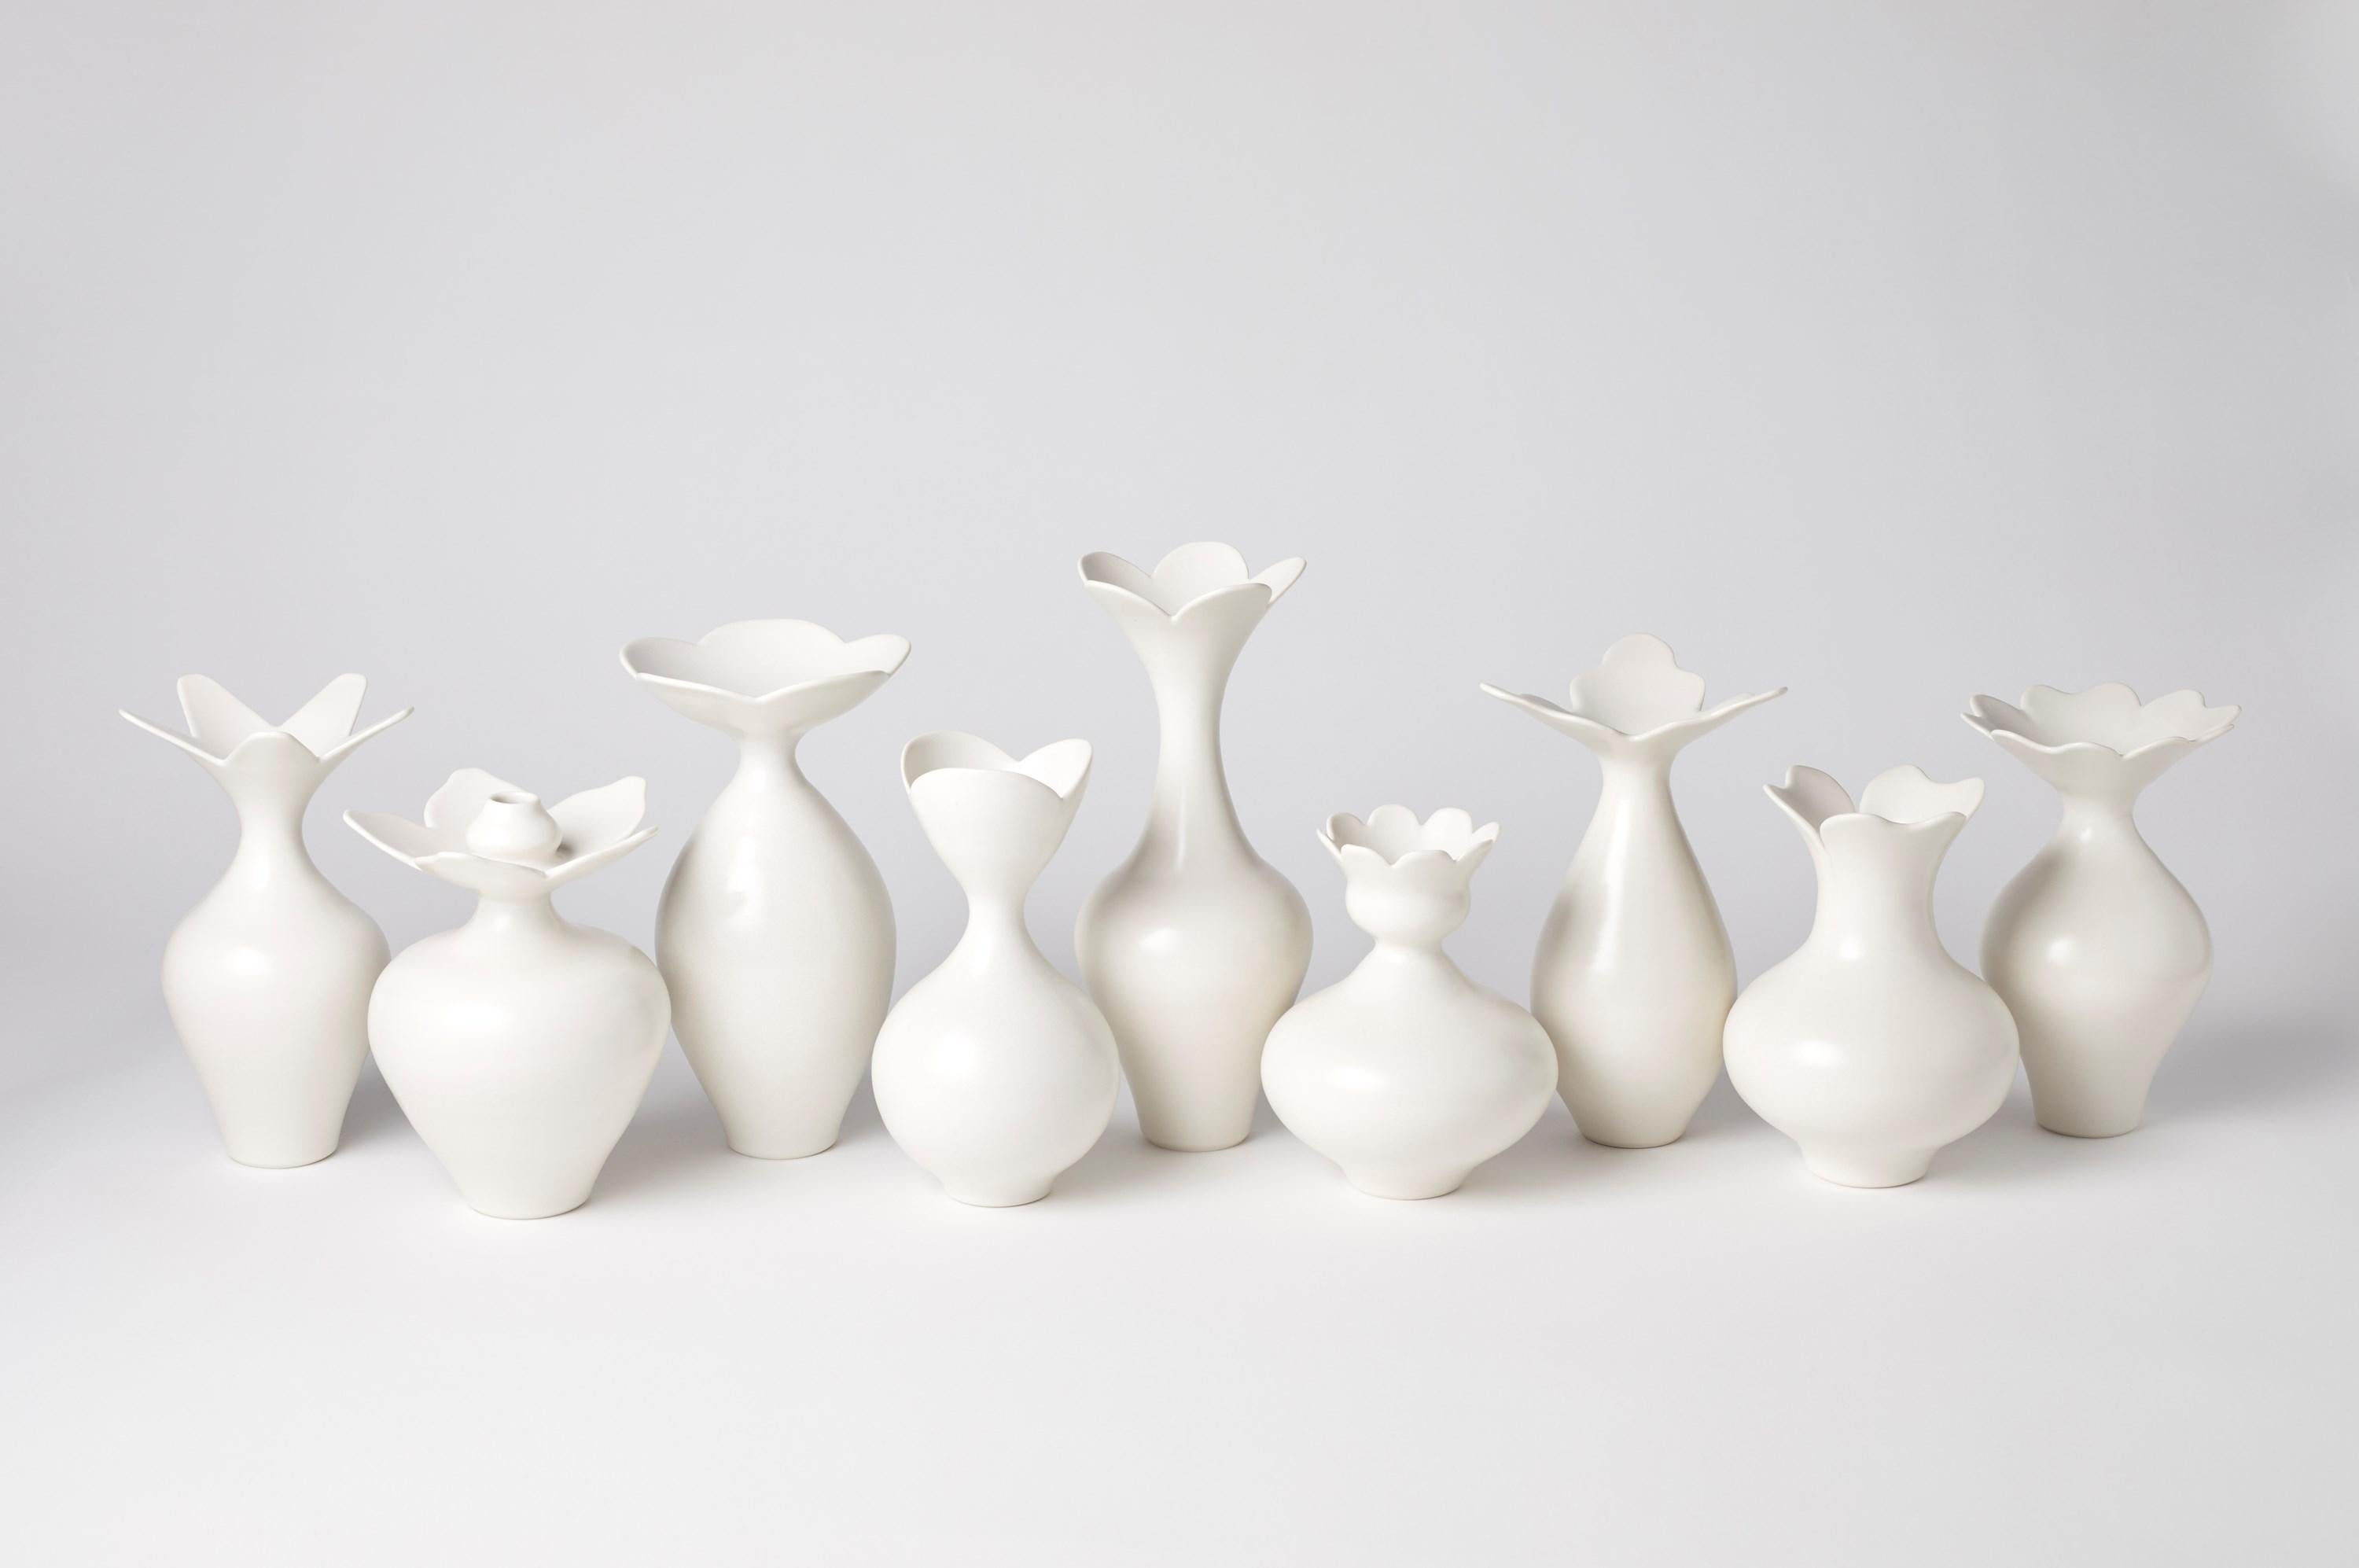 British Vase with Tri Lobed Rim I, a Unique White Porcelain Vase by Vivienne Foley